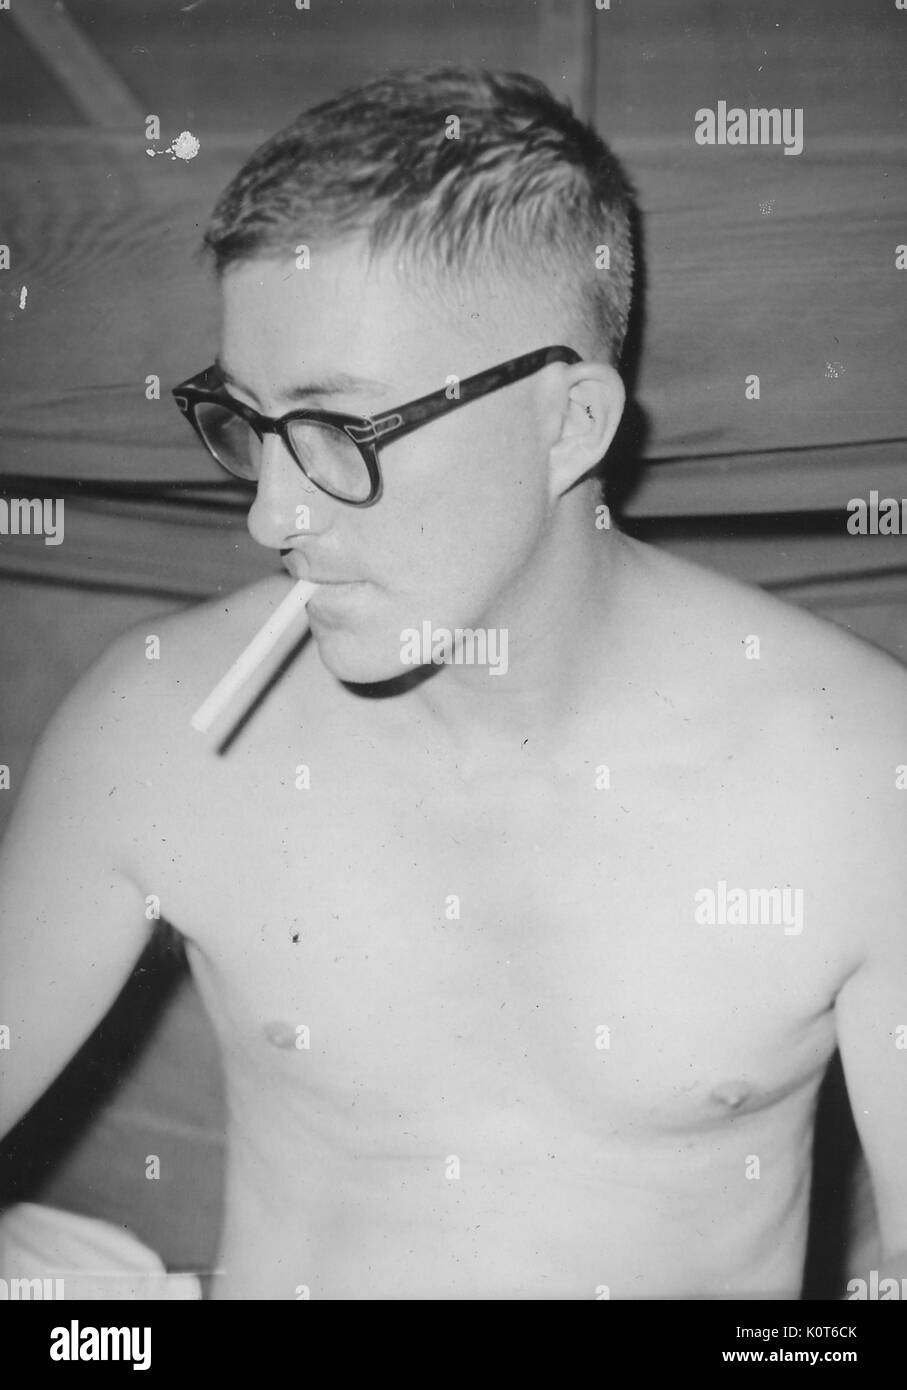 Soldat das Rauchen einer Zigarette ohne sein Hemd auf, trug militärische Frage Gläser, Vietnam, 1967. Stockfoto